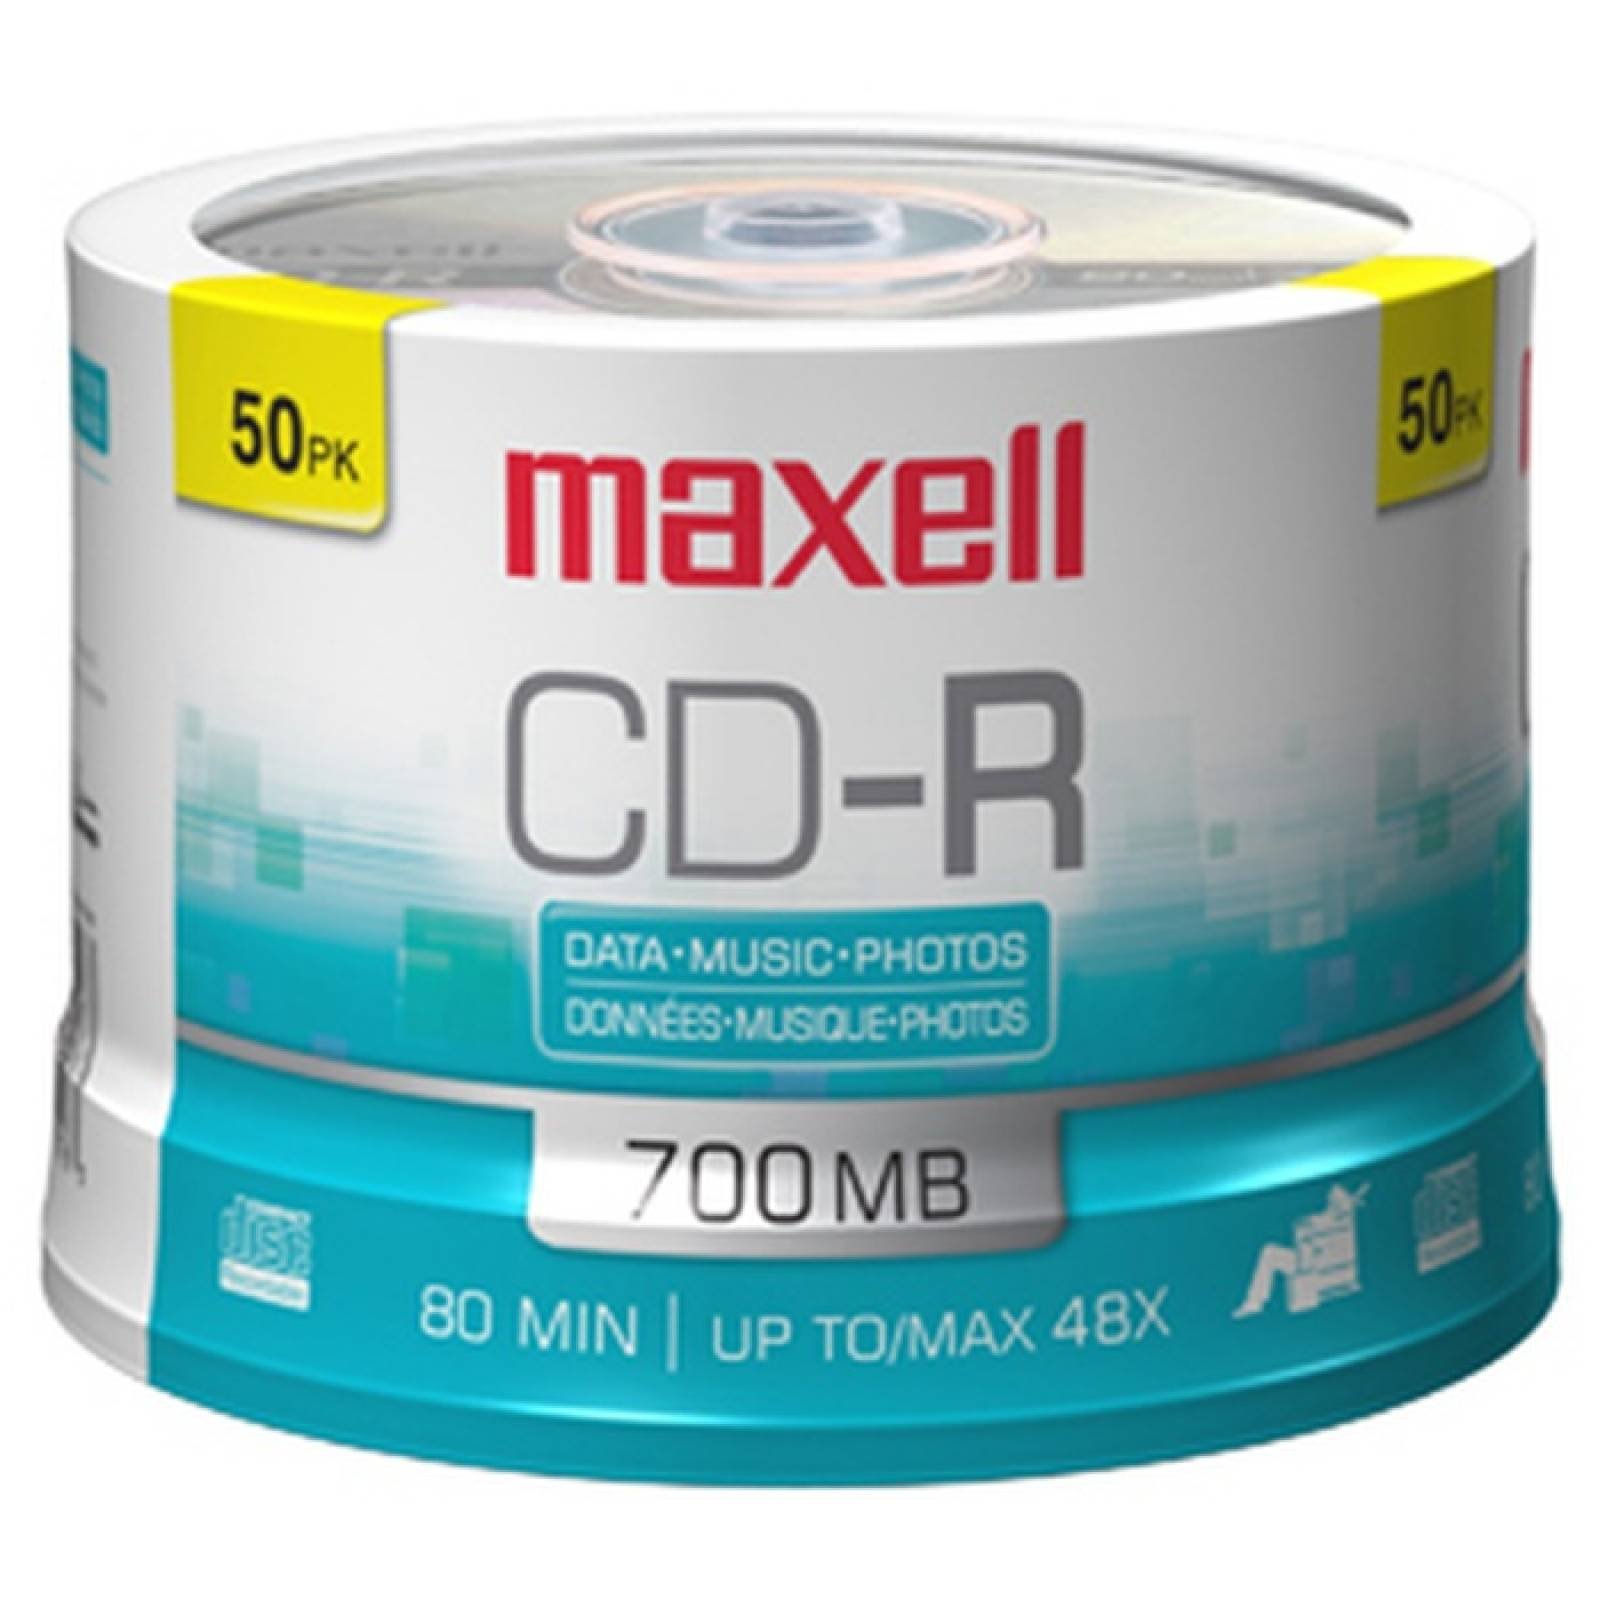 Maxell CDR Media